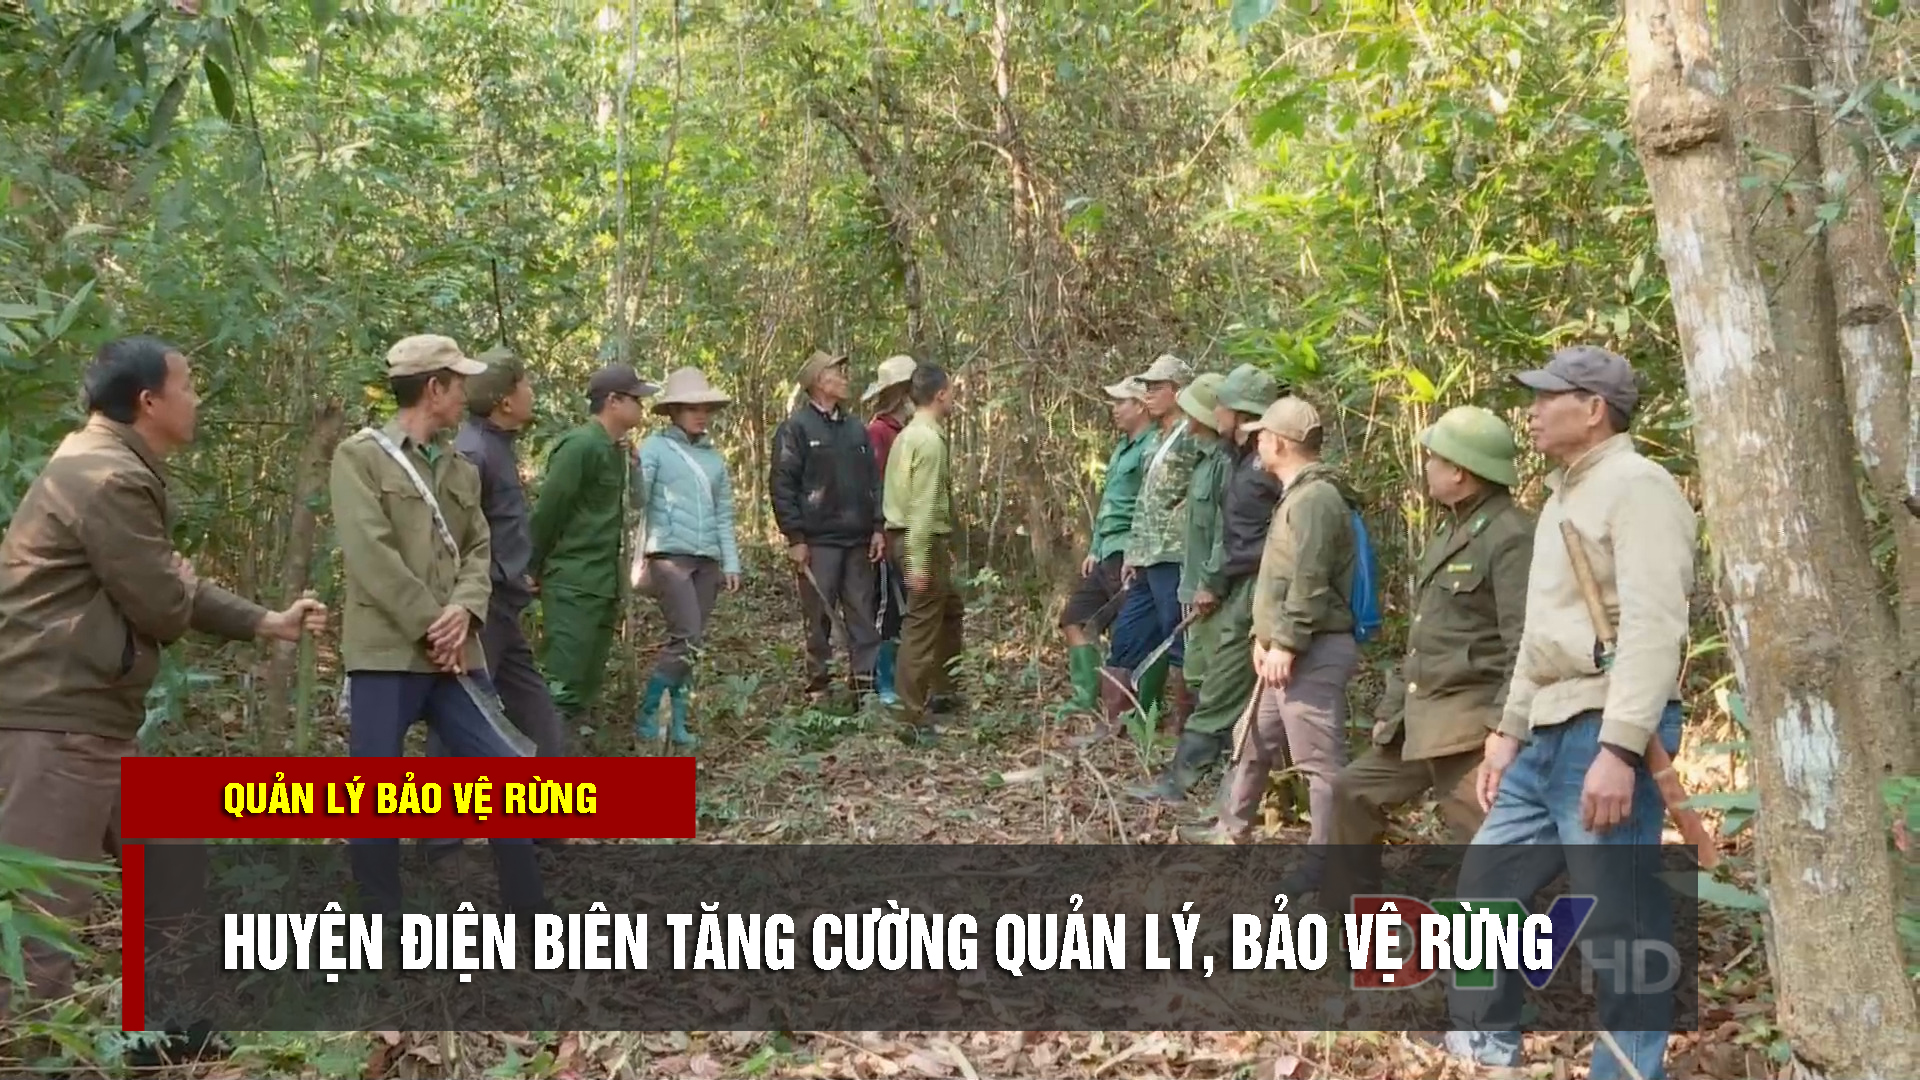 Huyện Điện Biên tăng cường quản lý, bảo vệ rừng